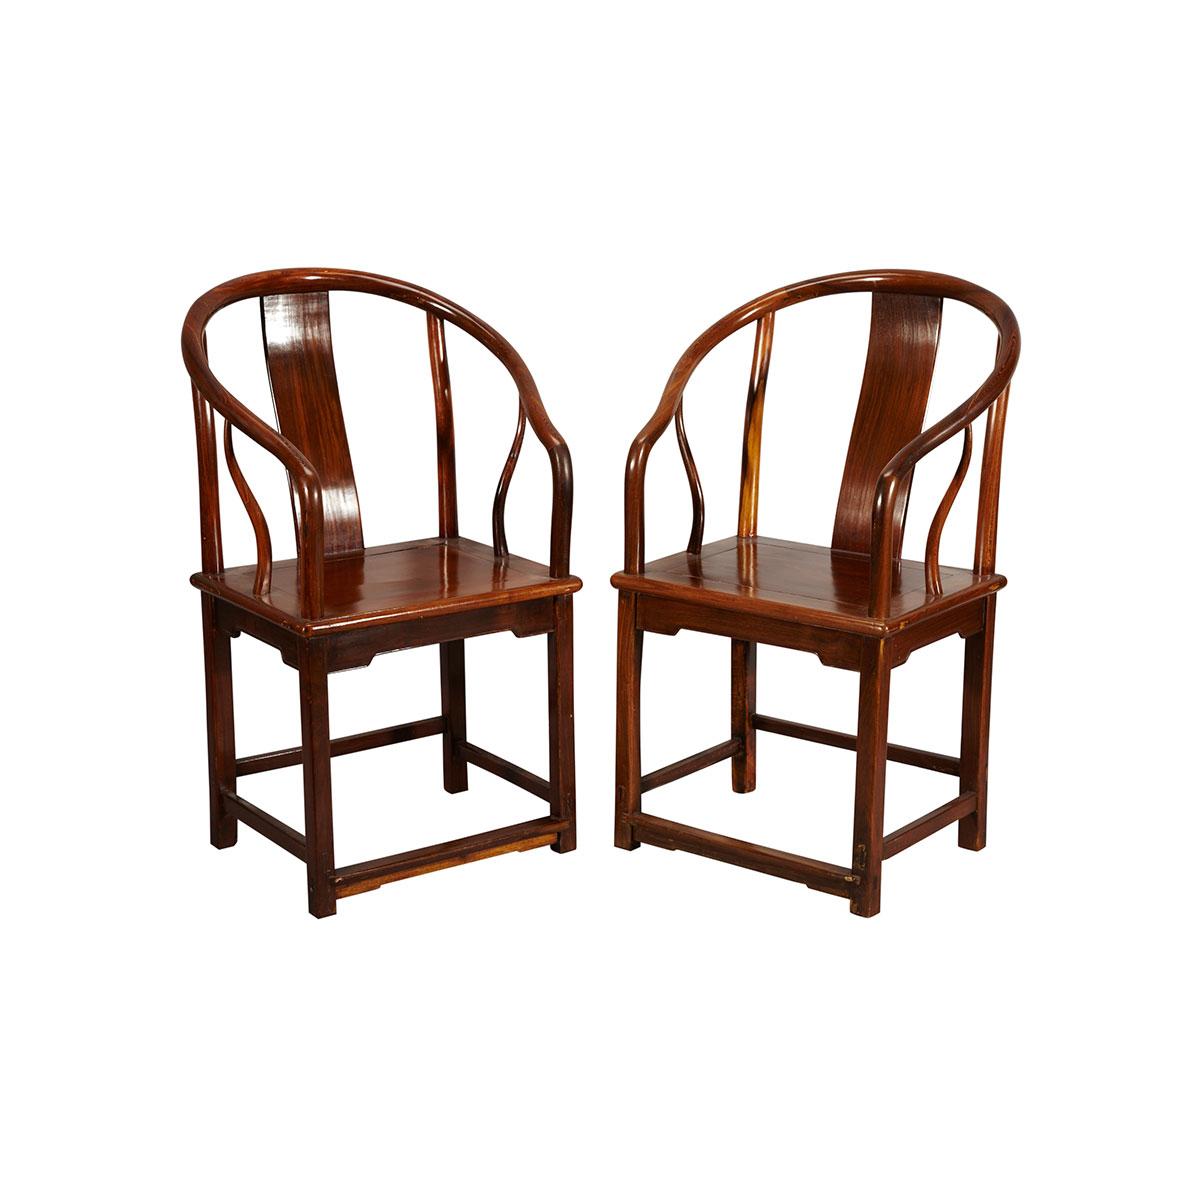 Pair of Hardwood Horseshoe Back Chairs